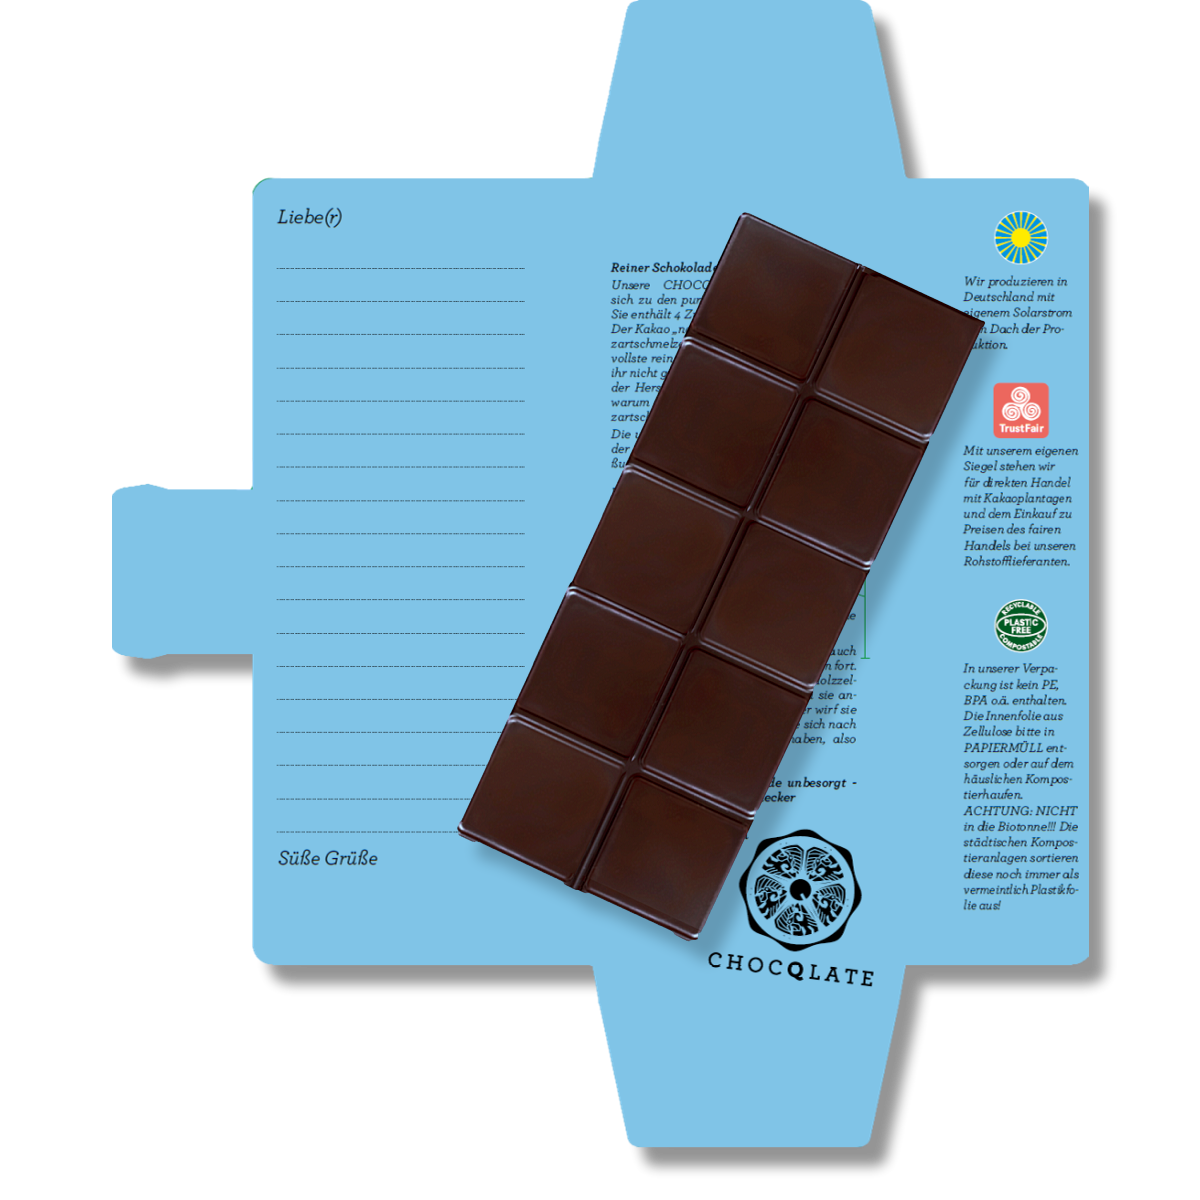 Chocolate orgánico SweetGreets con tarjeta de felicitación "Eres el cielo"